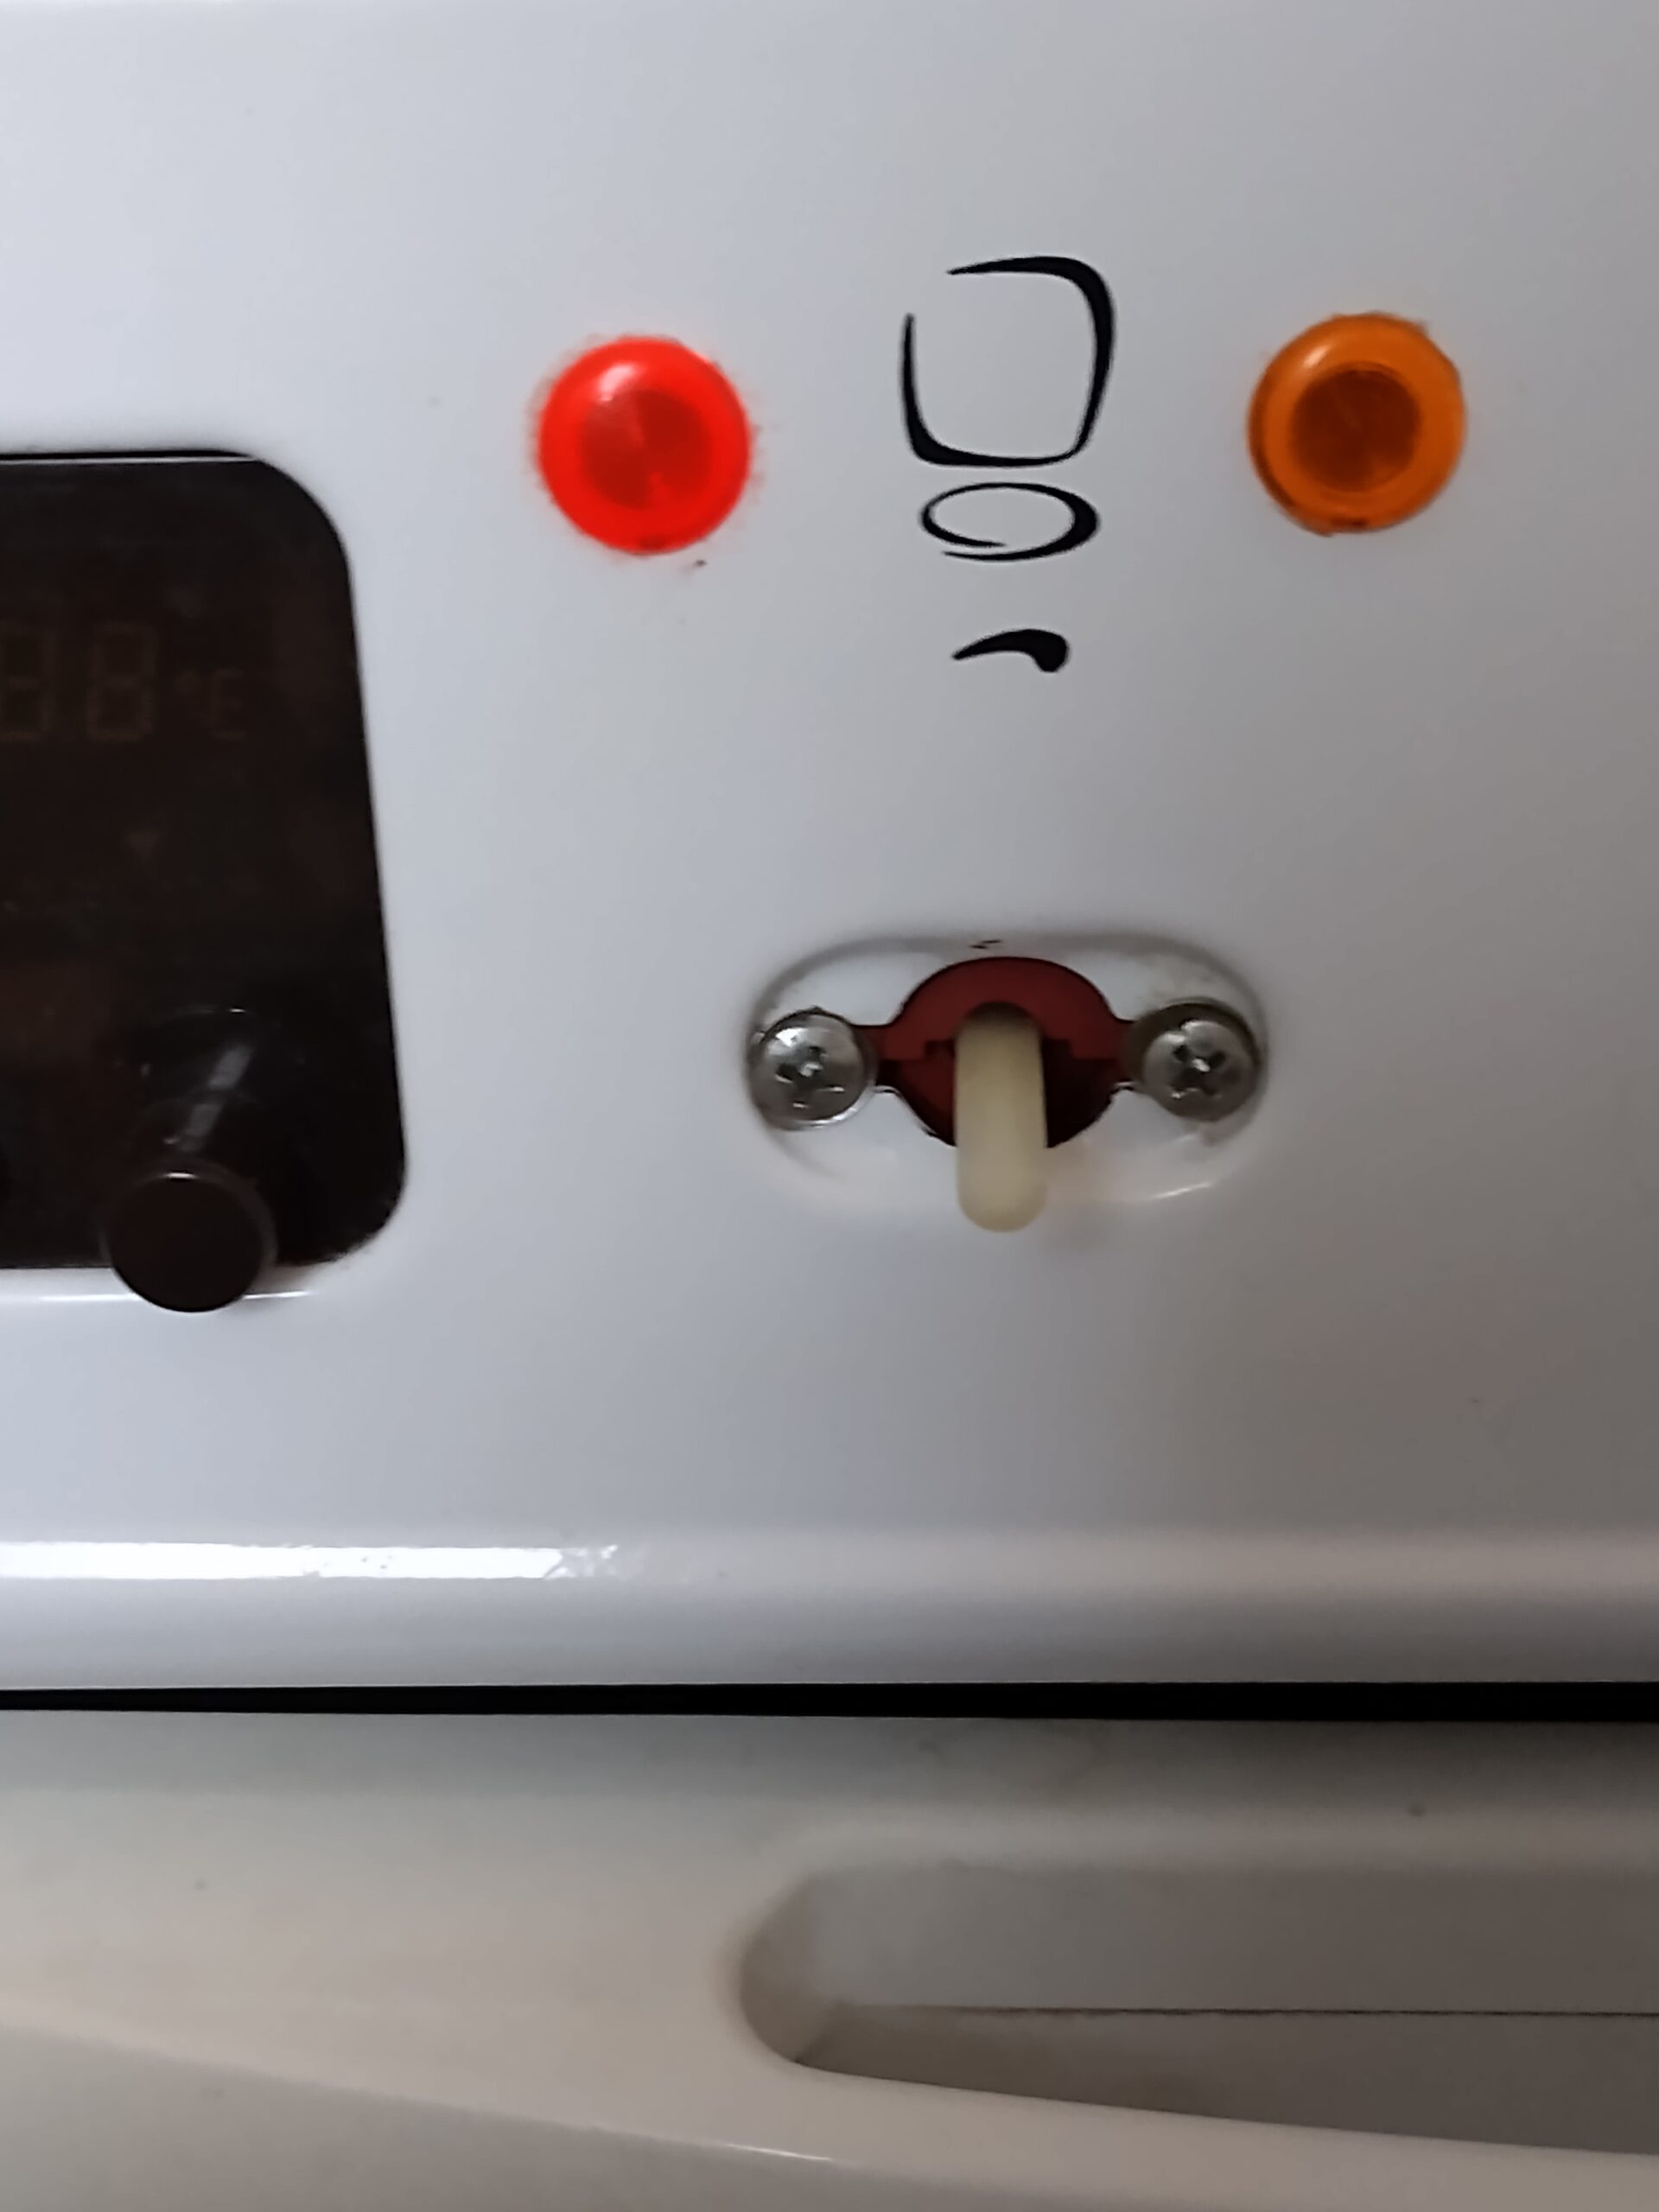 Wymiana pokrętła kuchenki gazowo-elektrycznej Mastercook - pokrętło zdjęte